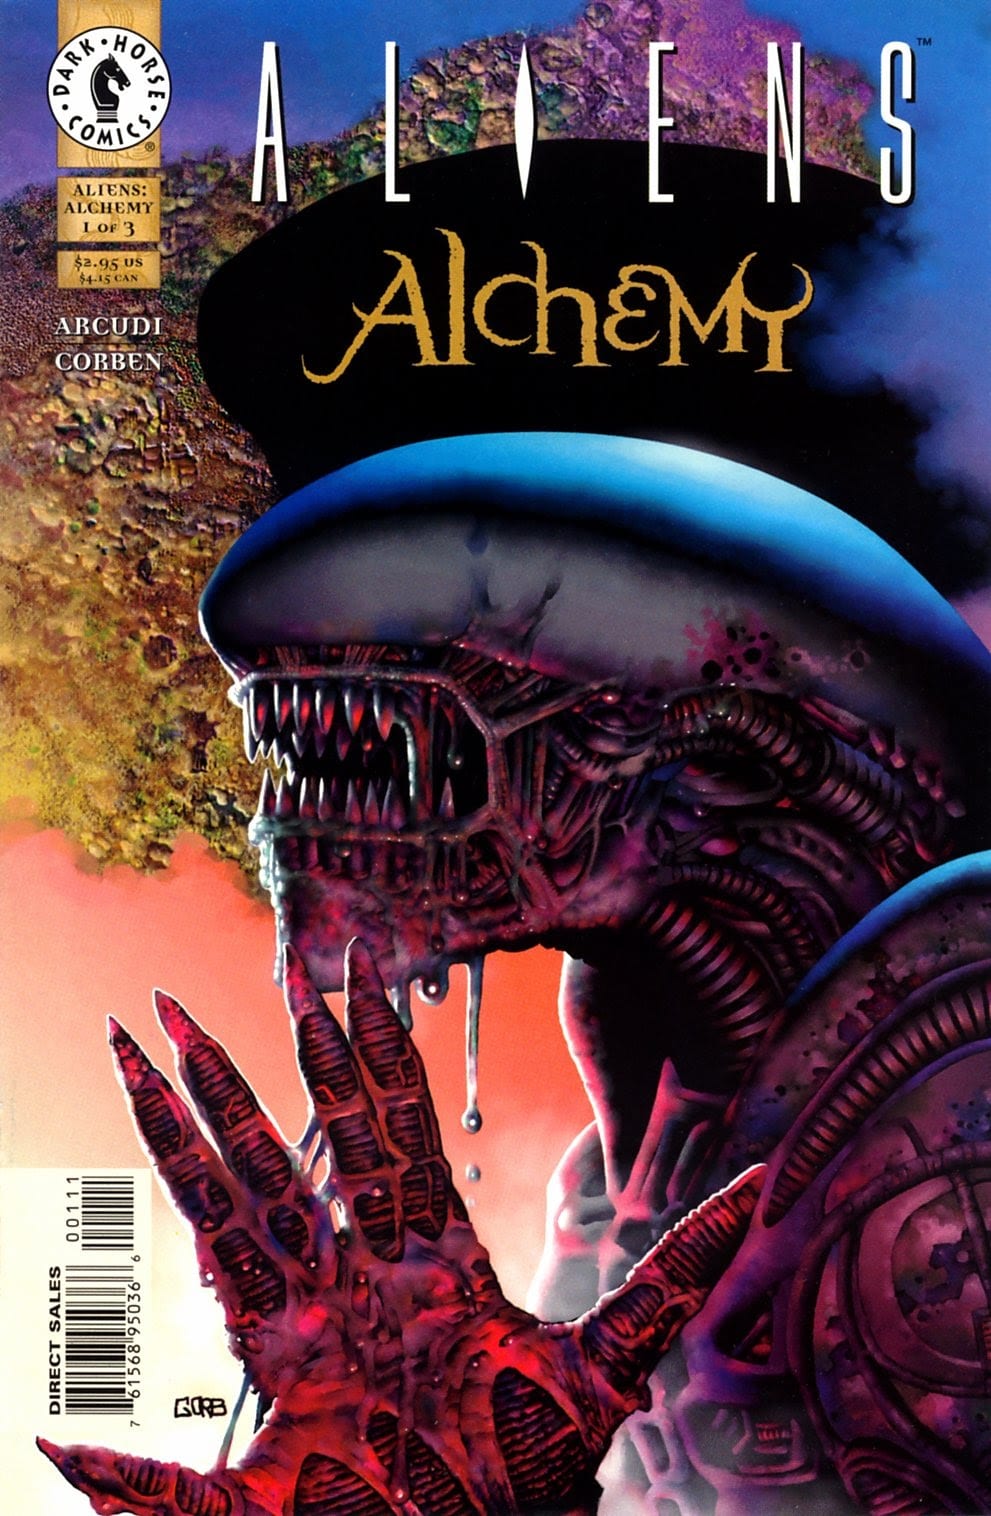 Comic completo Aliens: Alchemy